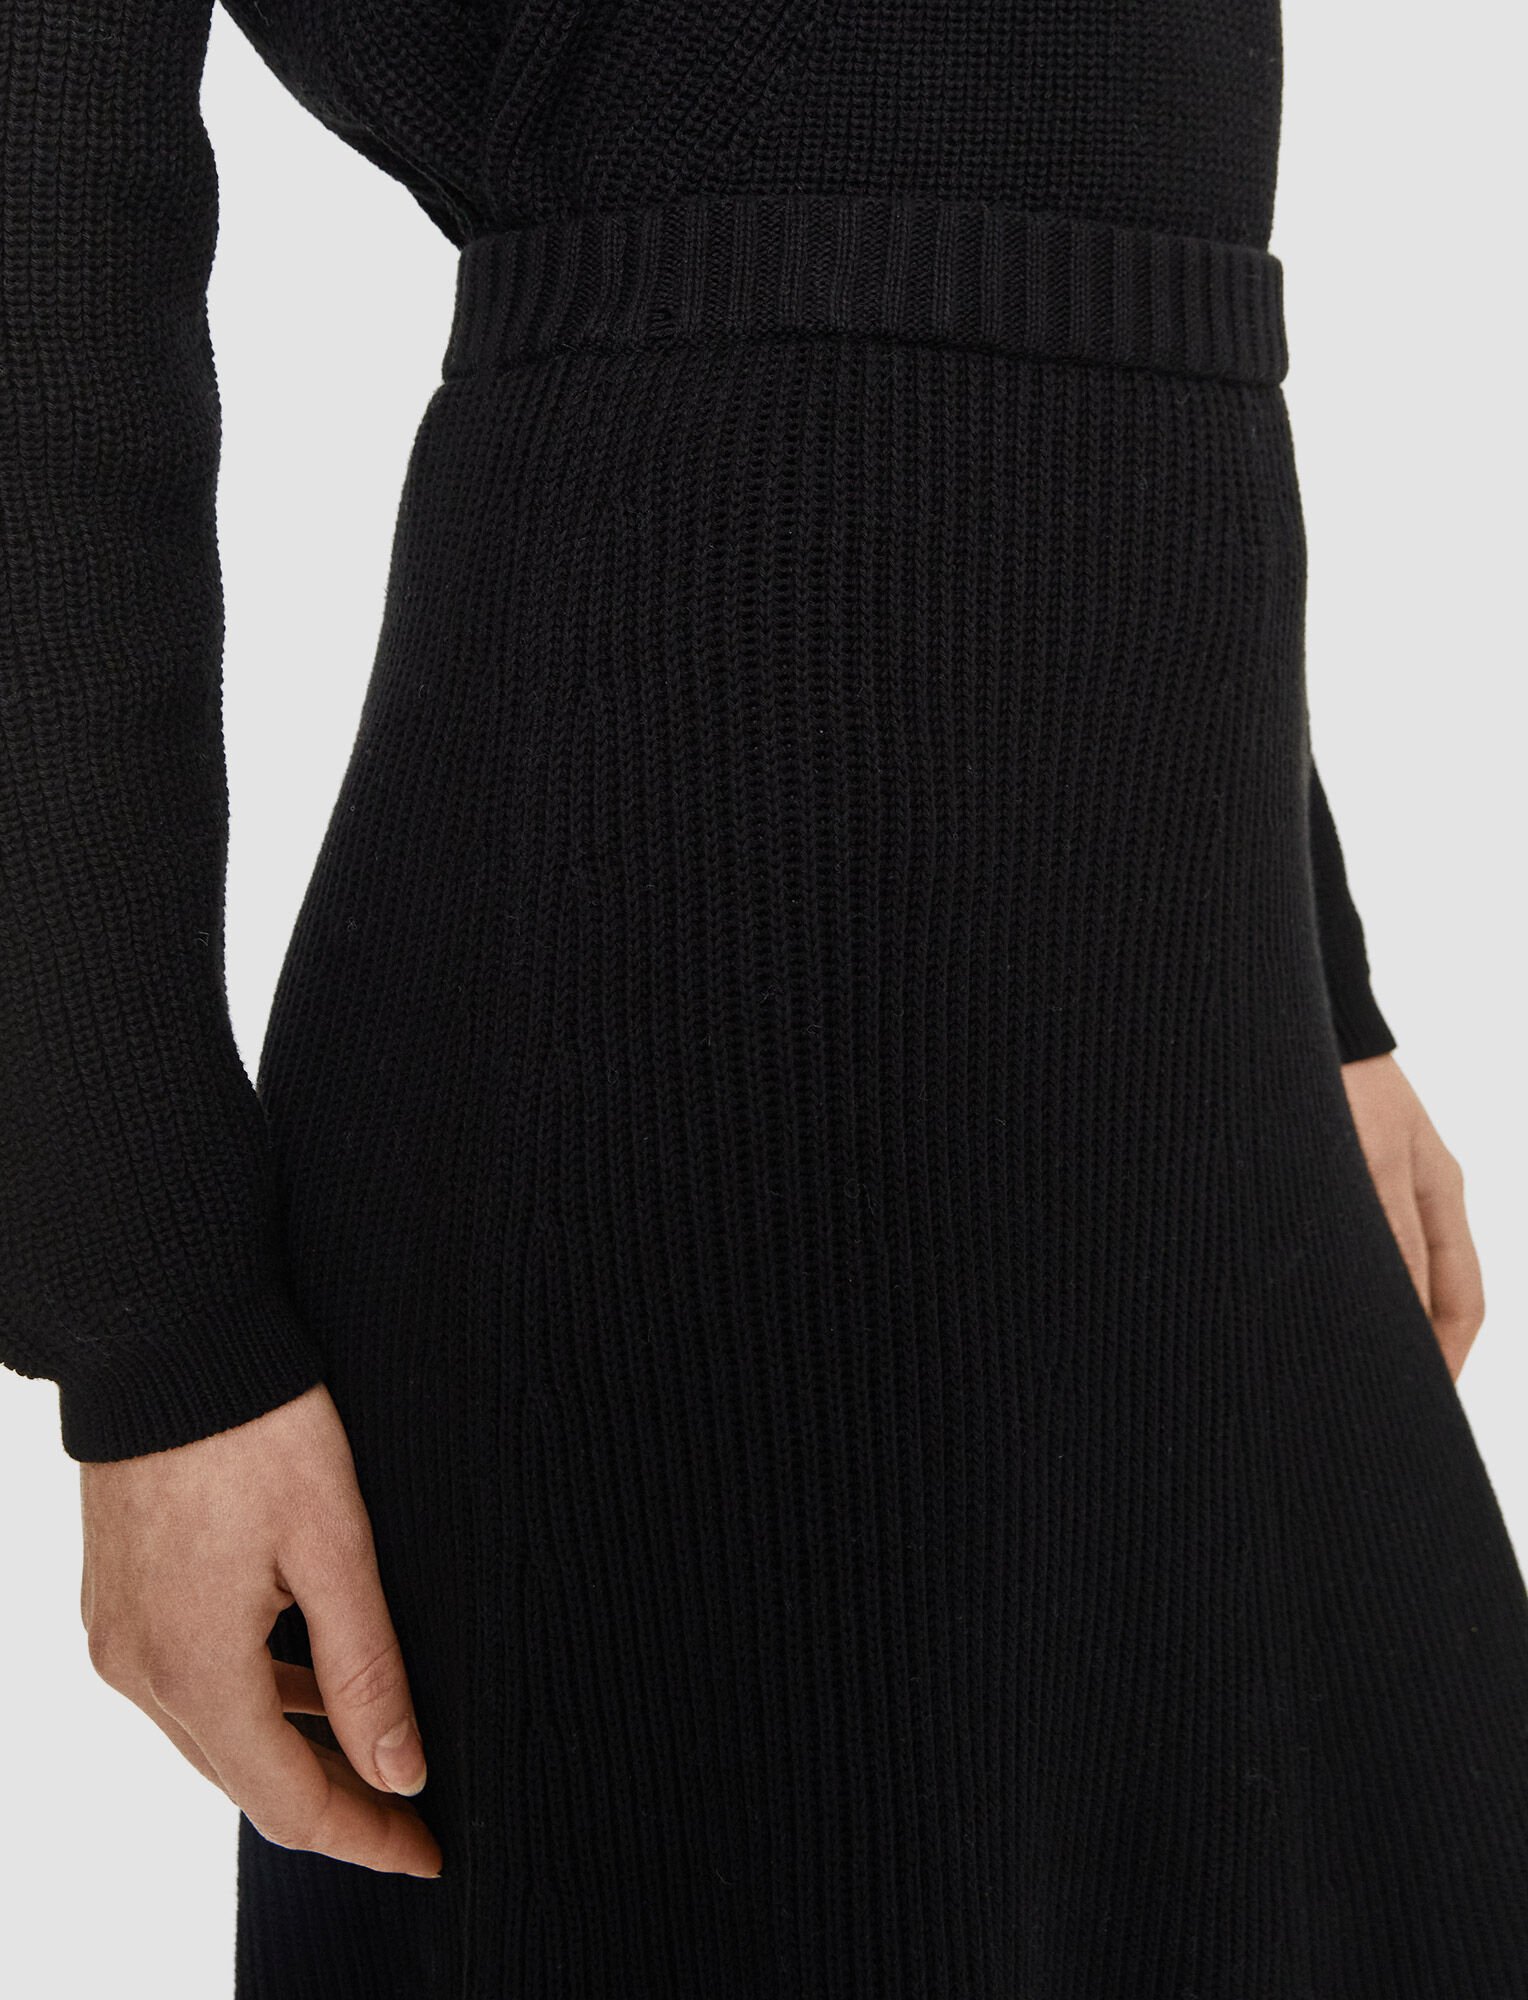 Egyptian Cotton Skirt in Black | JOSEPH UK